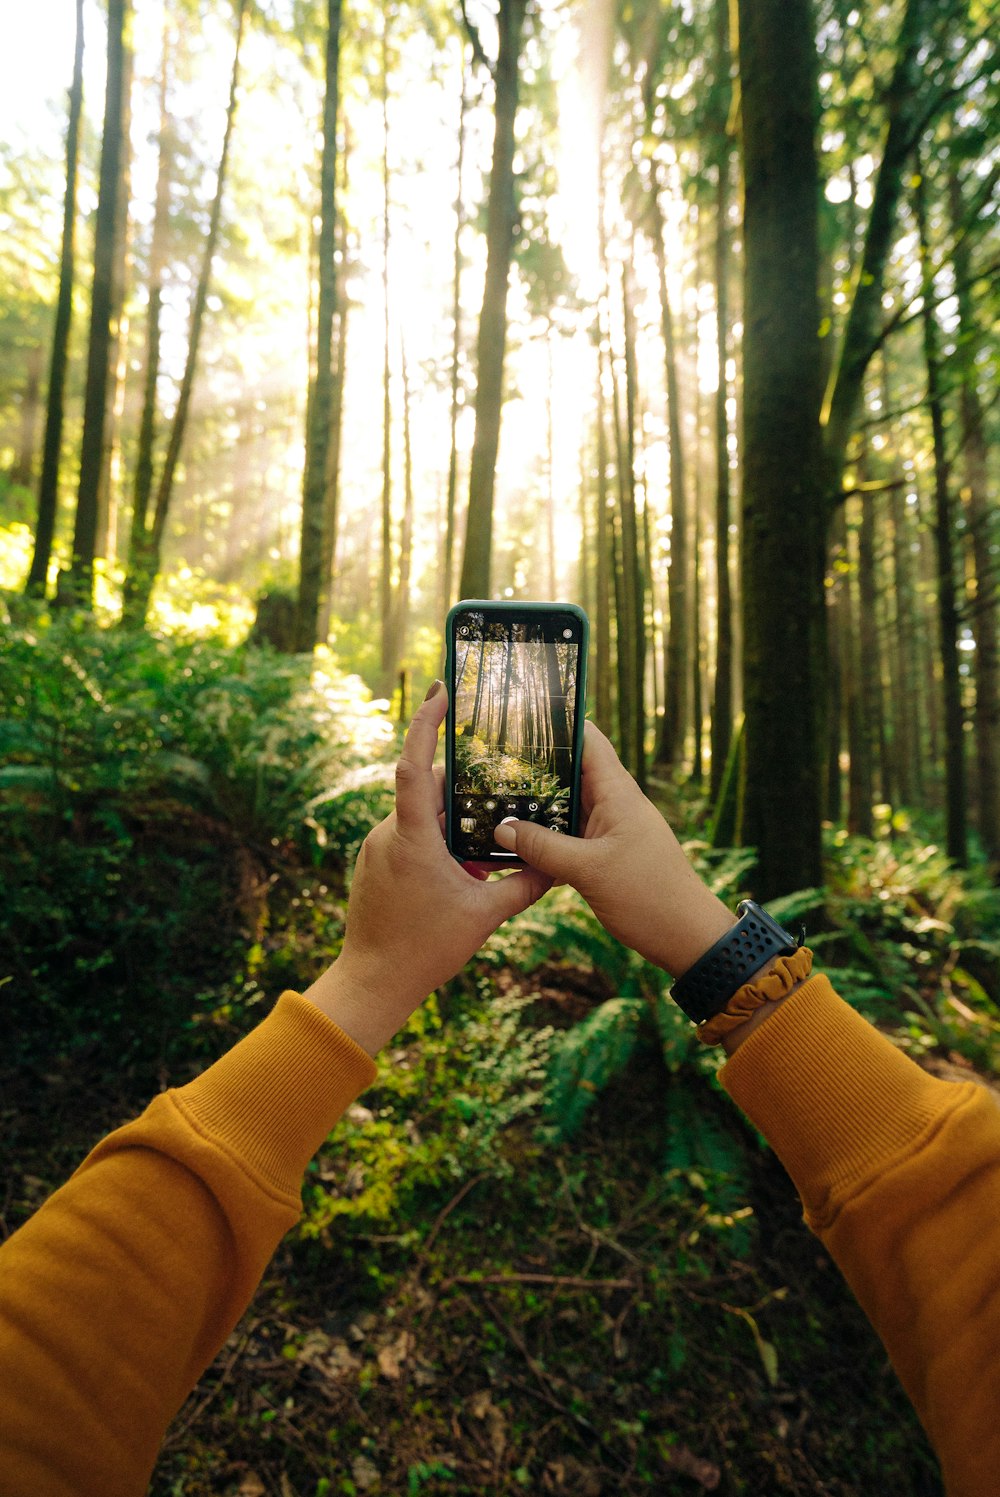 personne tenant un smartphone noir prenant des photos d’arbres verts pendant la journée